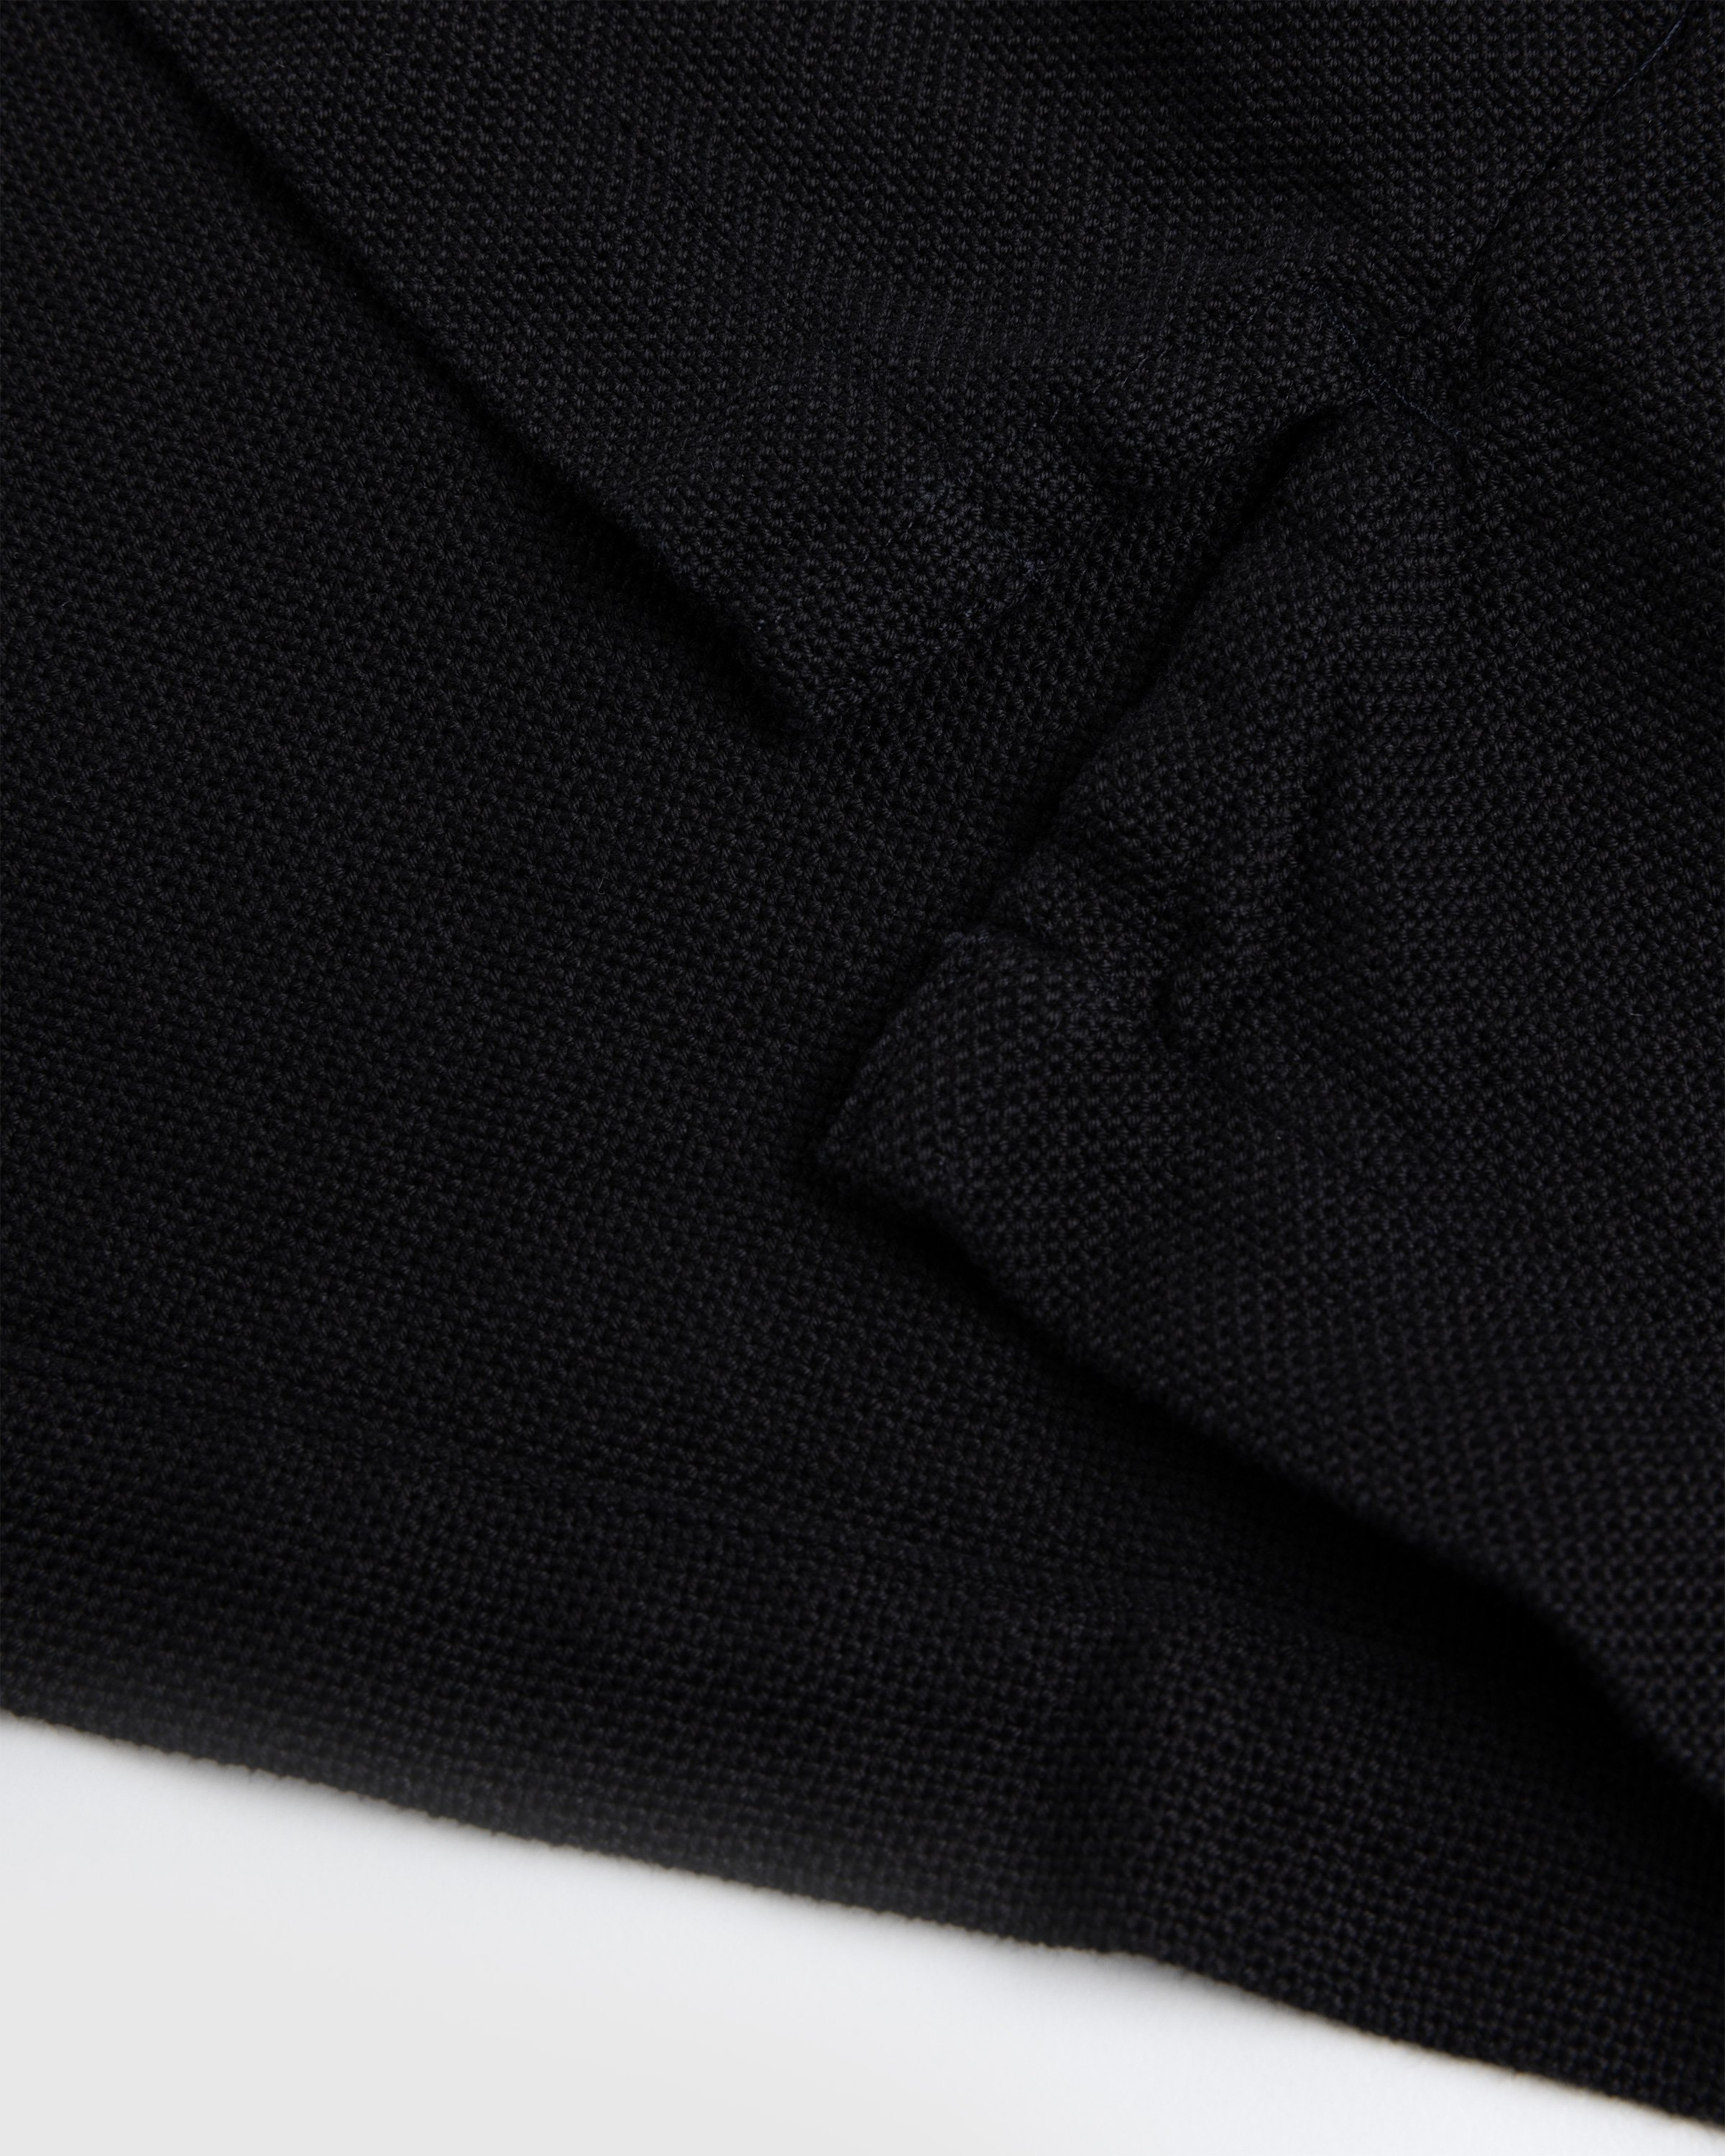 Our Legacy - Isola Shirt Black Sparse Panama Cotton - Clothing - Black - Image 6